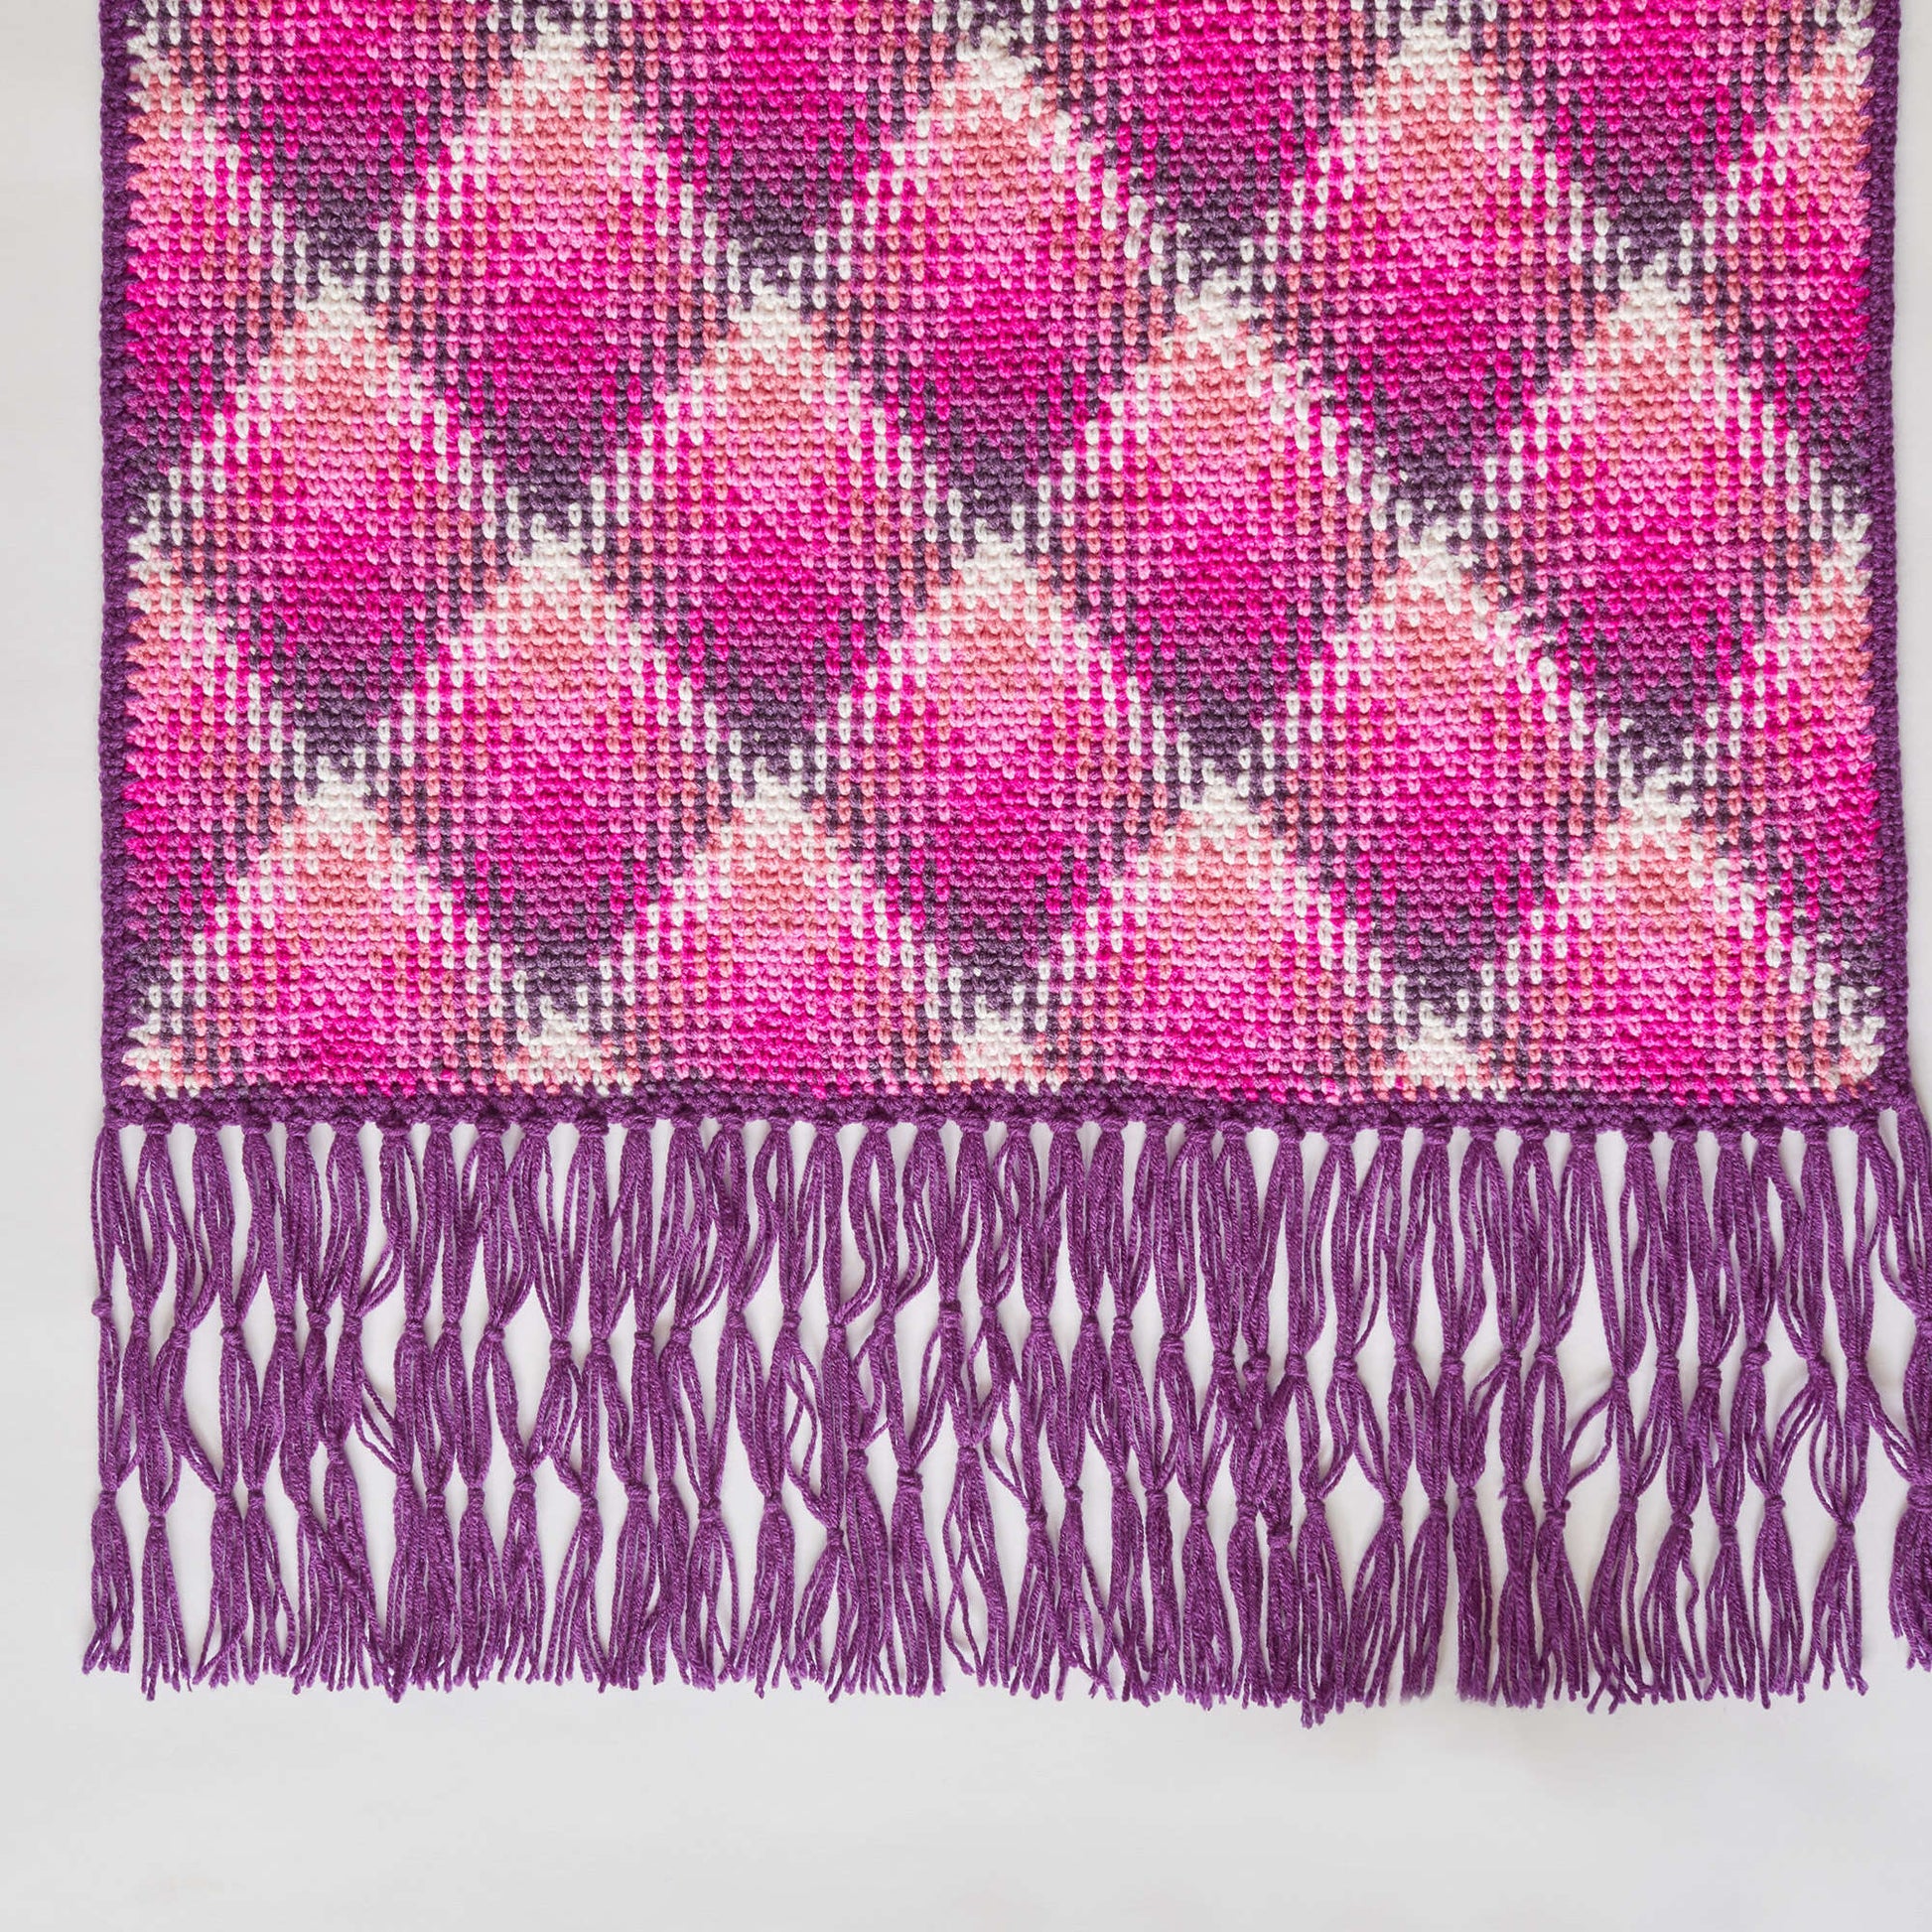 Free Red Heart Fabulous Planned Pooling Wrap Crochet Pattern